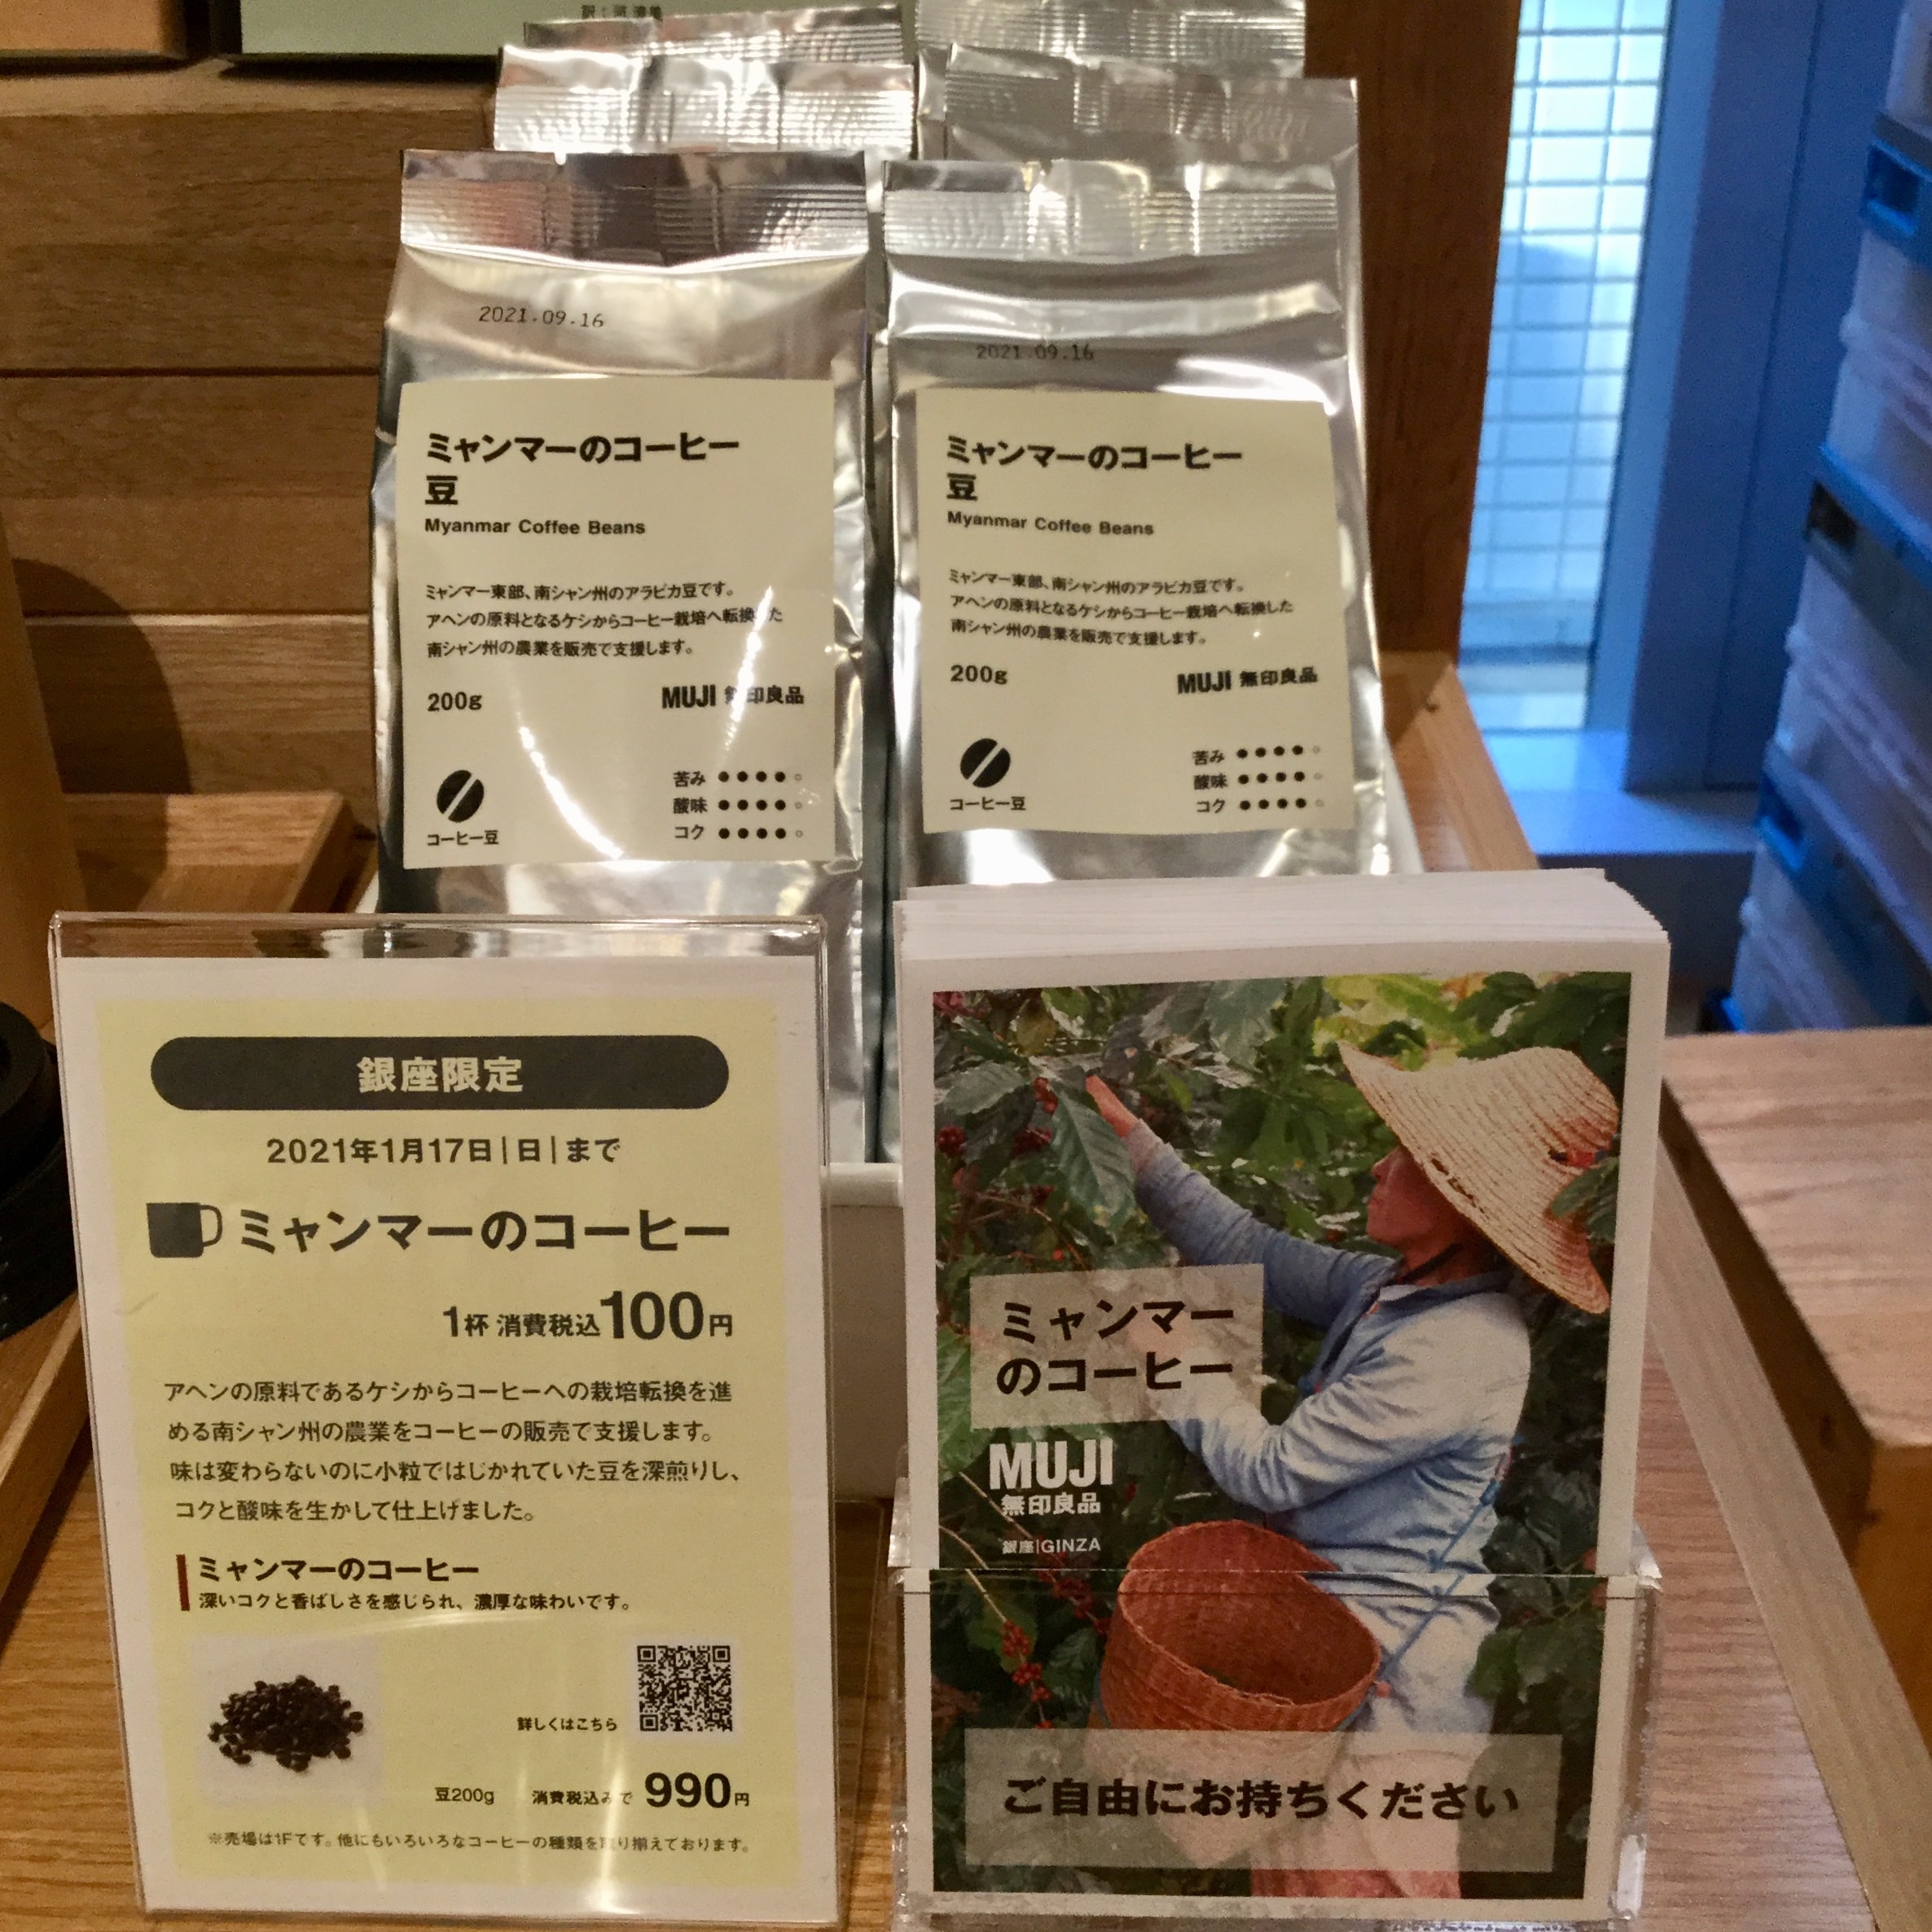 【銀座】100円でミャンマーのコーヒーを楽しめます。